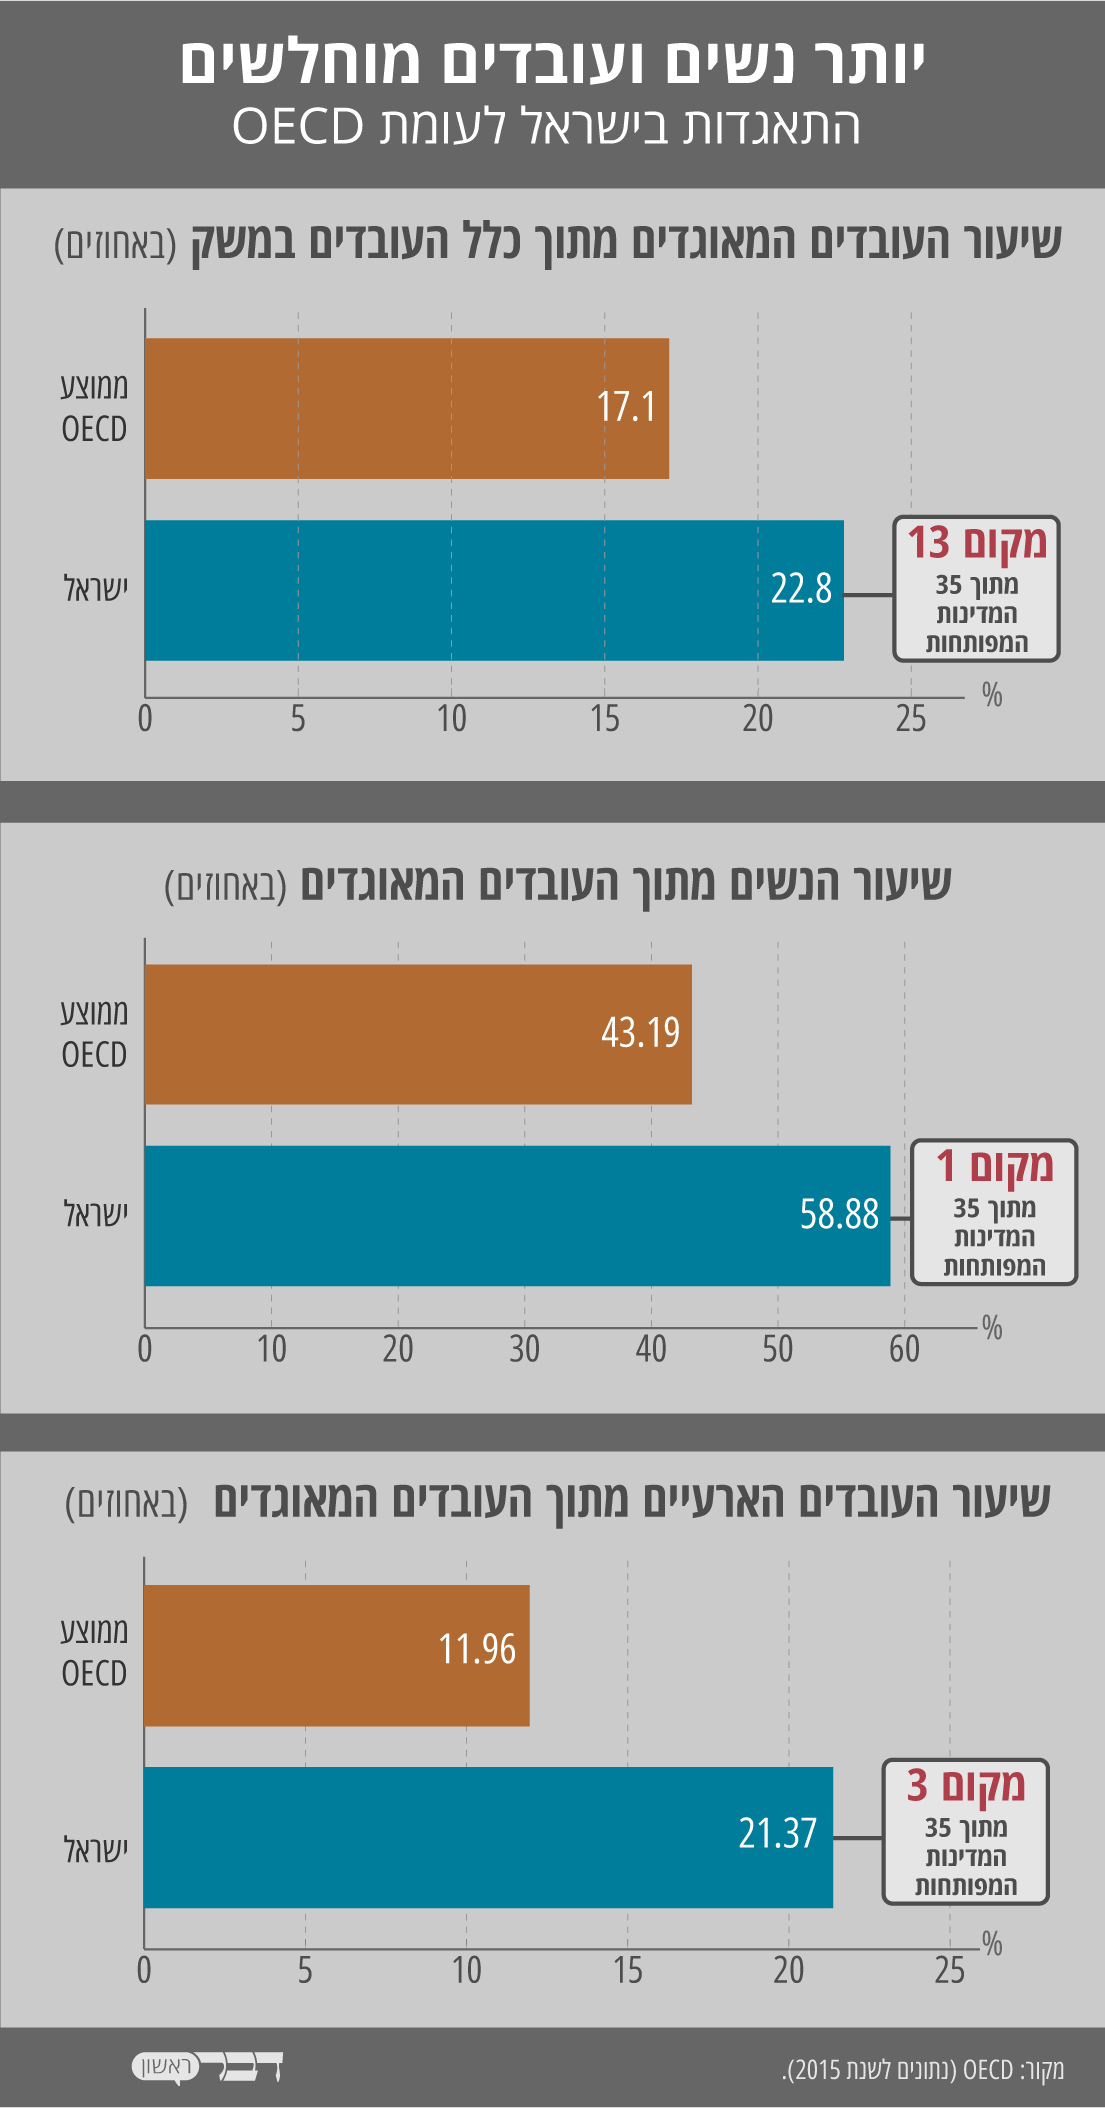 התאגדות בישראל לעומת OECD (נתונים:OECD,נתונים לשנת 2015, עיצוב: אידאה).